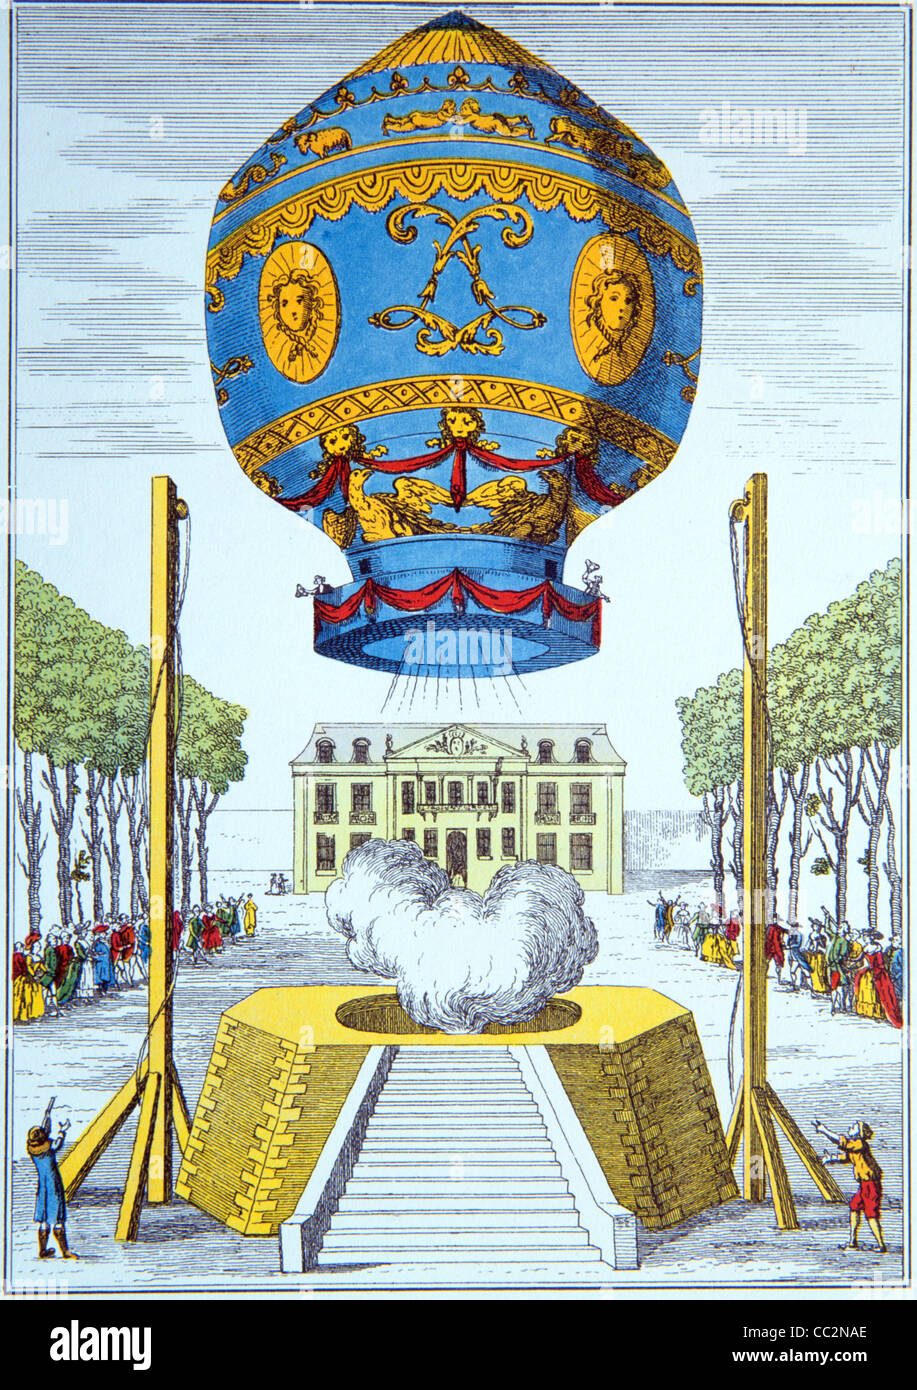 Mongolfiere Hot Air Balloon. Primo volo di una mongolfiera da nubile o del mondo, Parigi, novembre 1783. c19 incisione o illustrazione Foto Stock